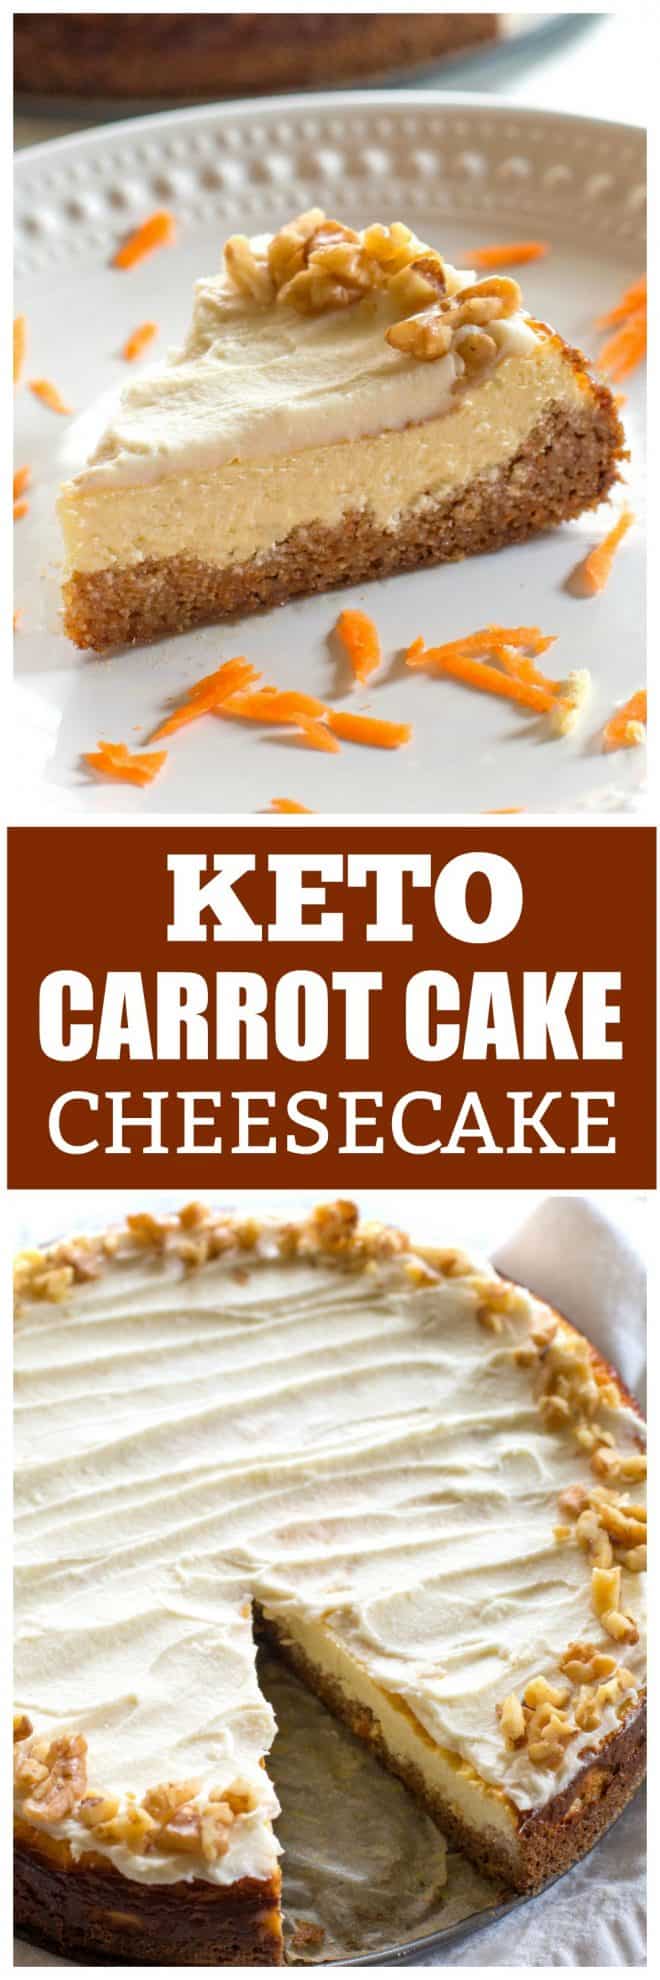 Keto Carrot Cake Cheesecake